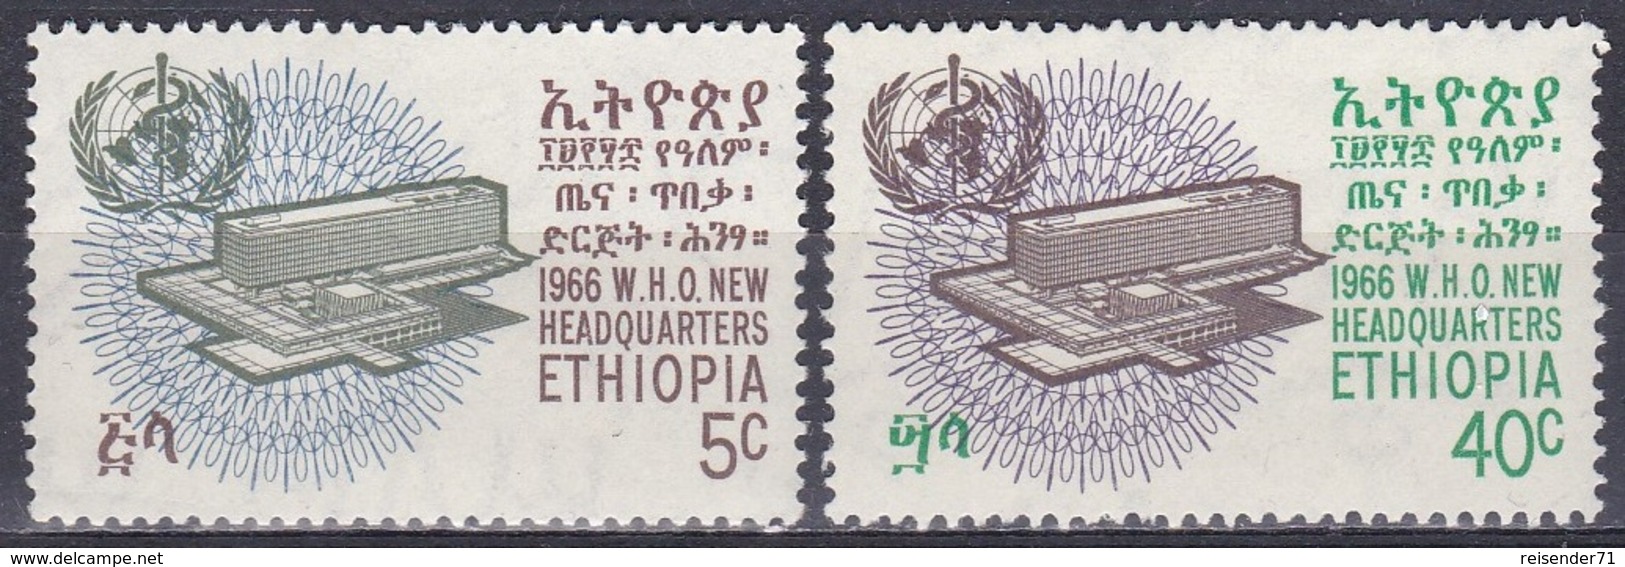 Äthiopien Ethiopia 1966 Organisationen UNO ONU WHO Weltgesundheitsorganisation Gesundheit Health, Mi. 547-8 ** - Äthiopien